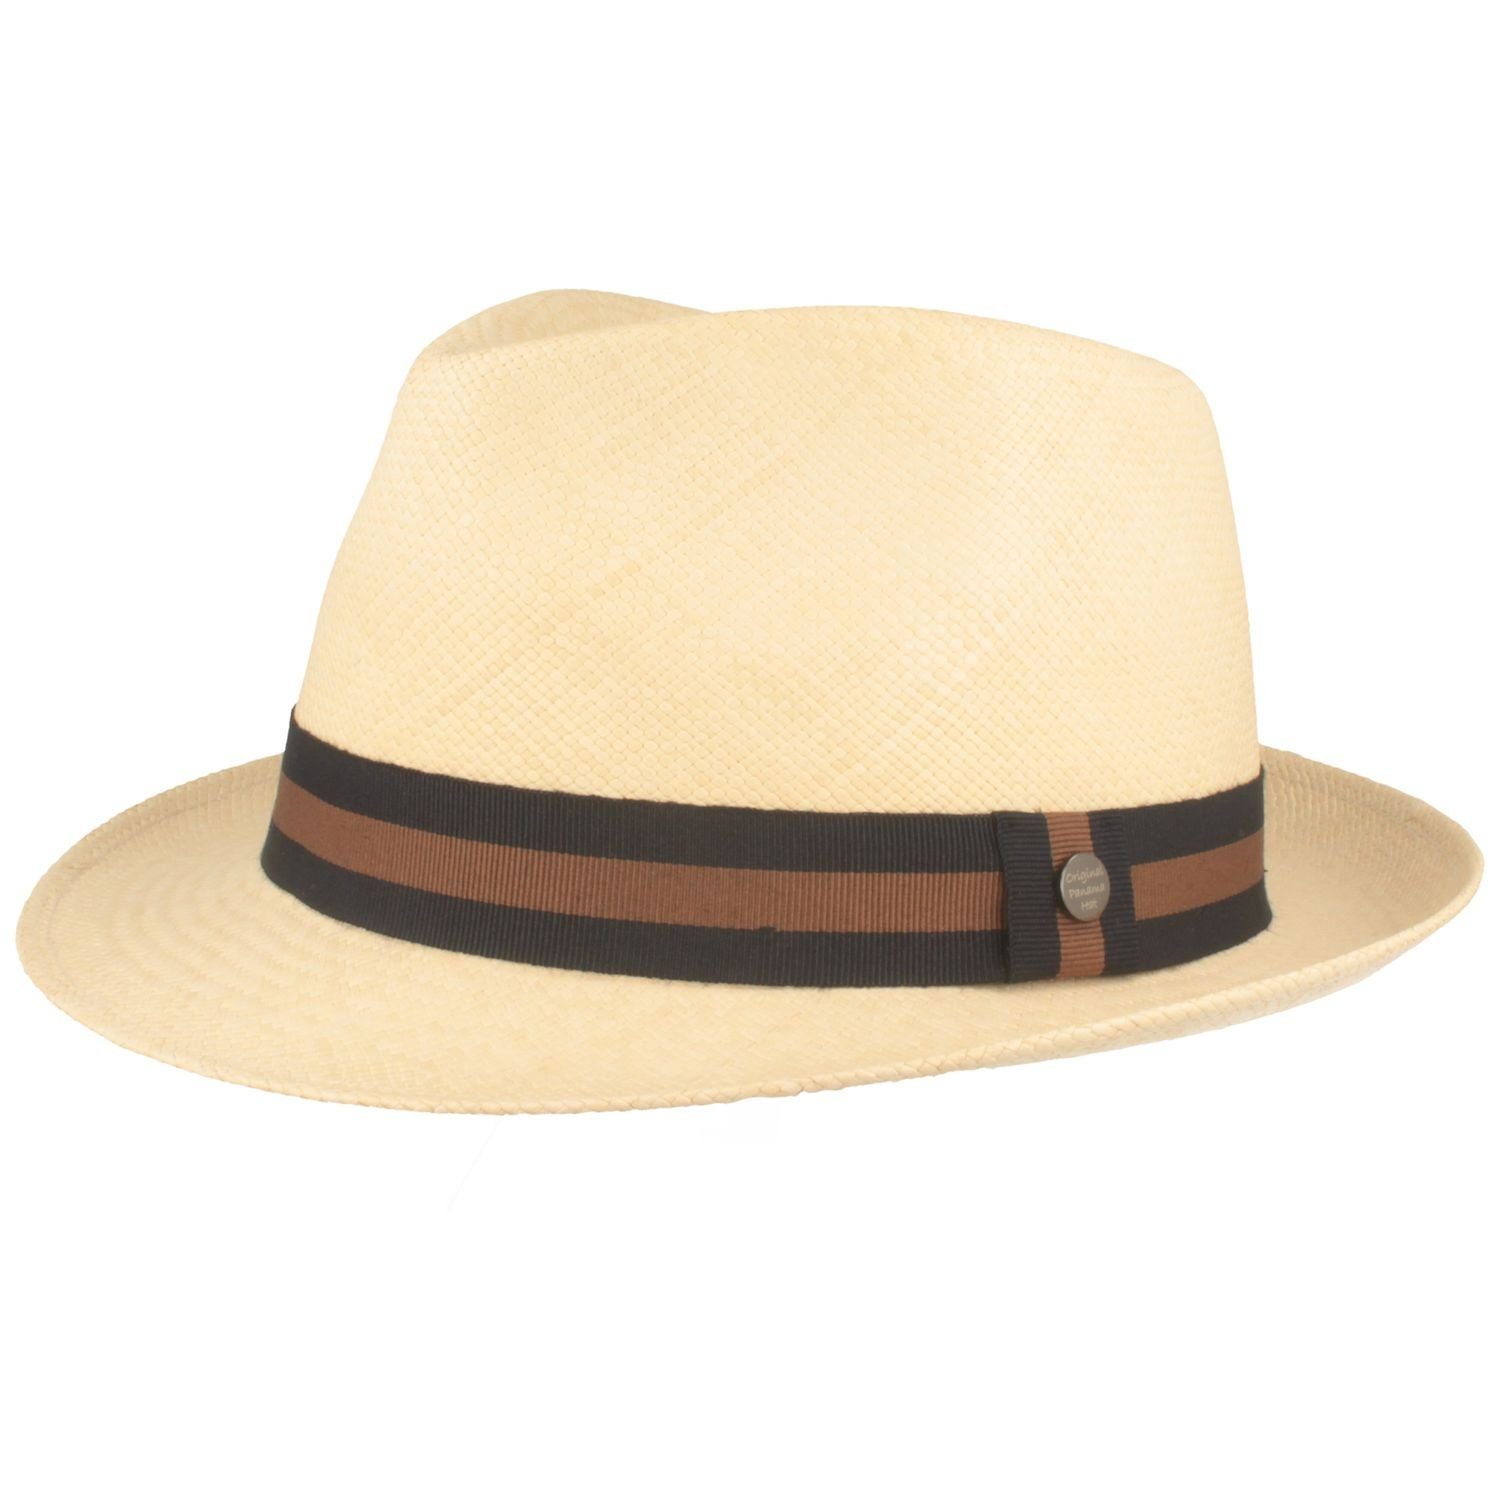 Beliebtheit der Lieferung per Nachnahme Breiter Strohhut Trilby Panama Hut moderner UV-Schutz mit 50+ Garnitur natur